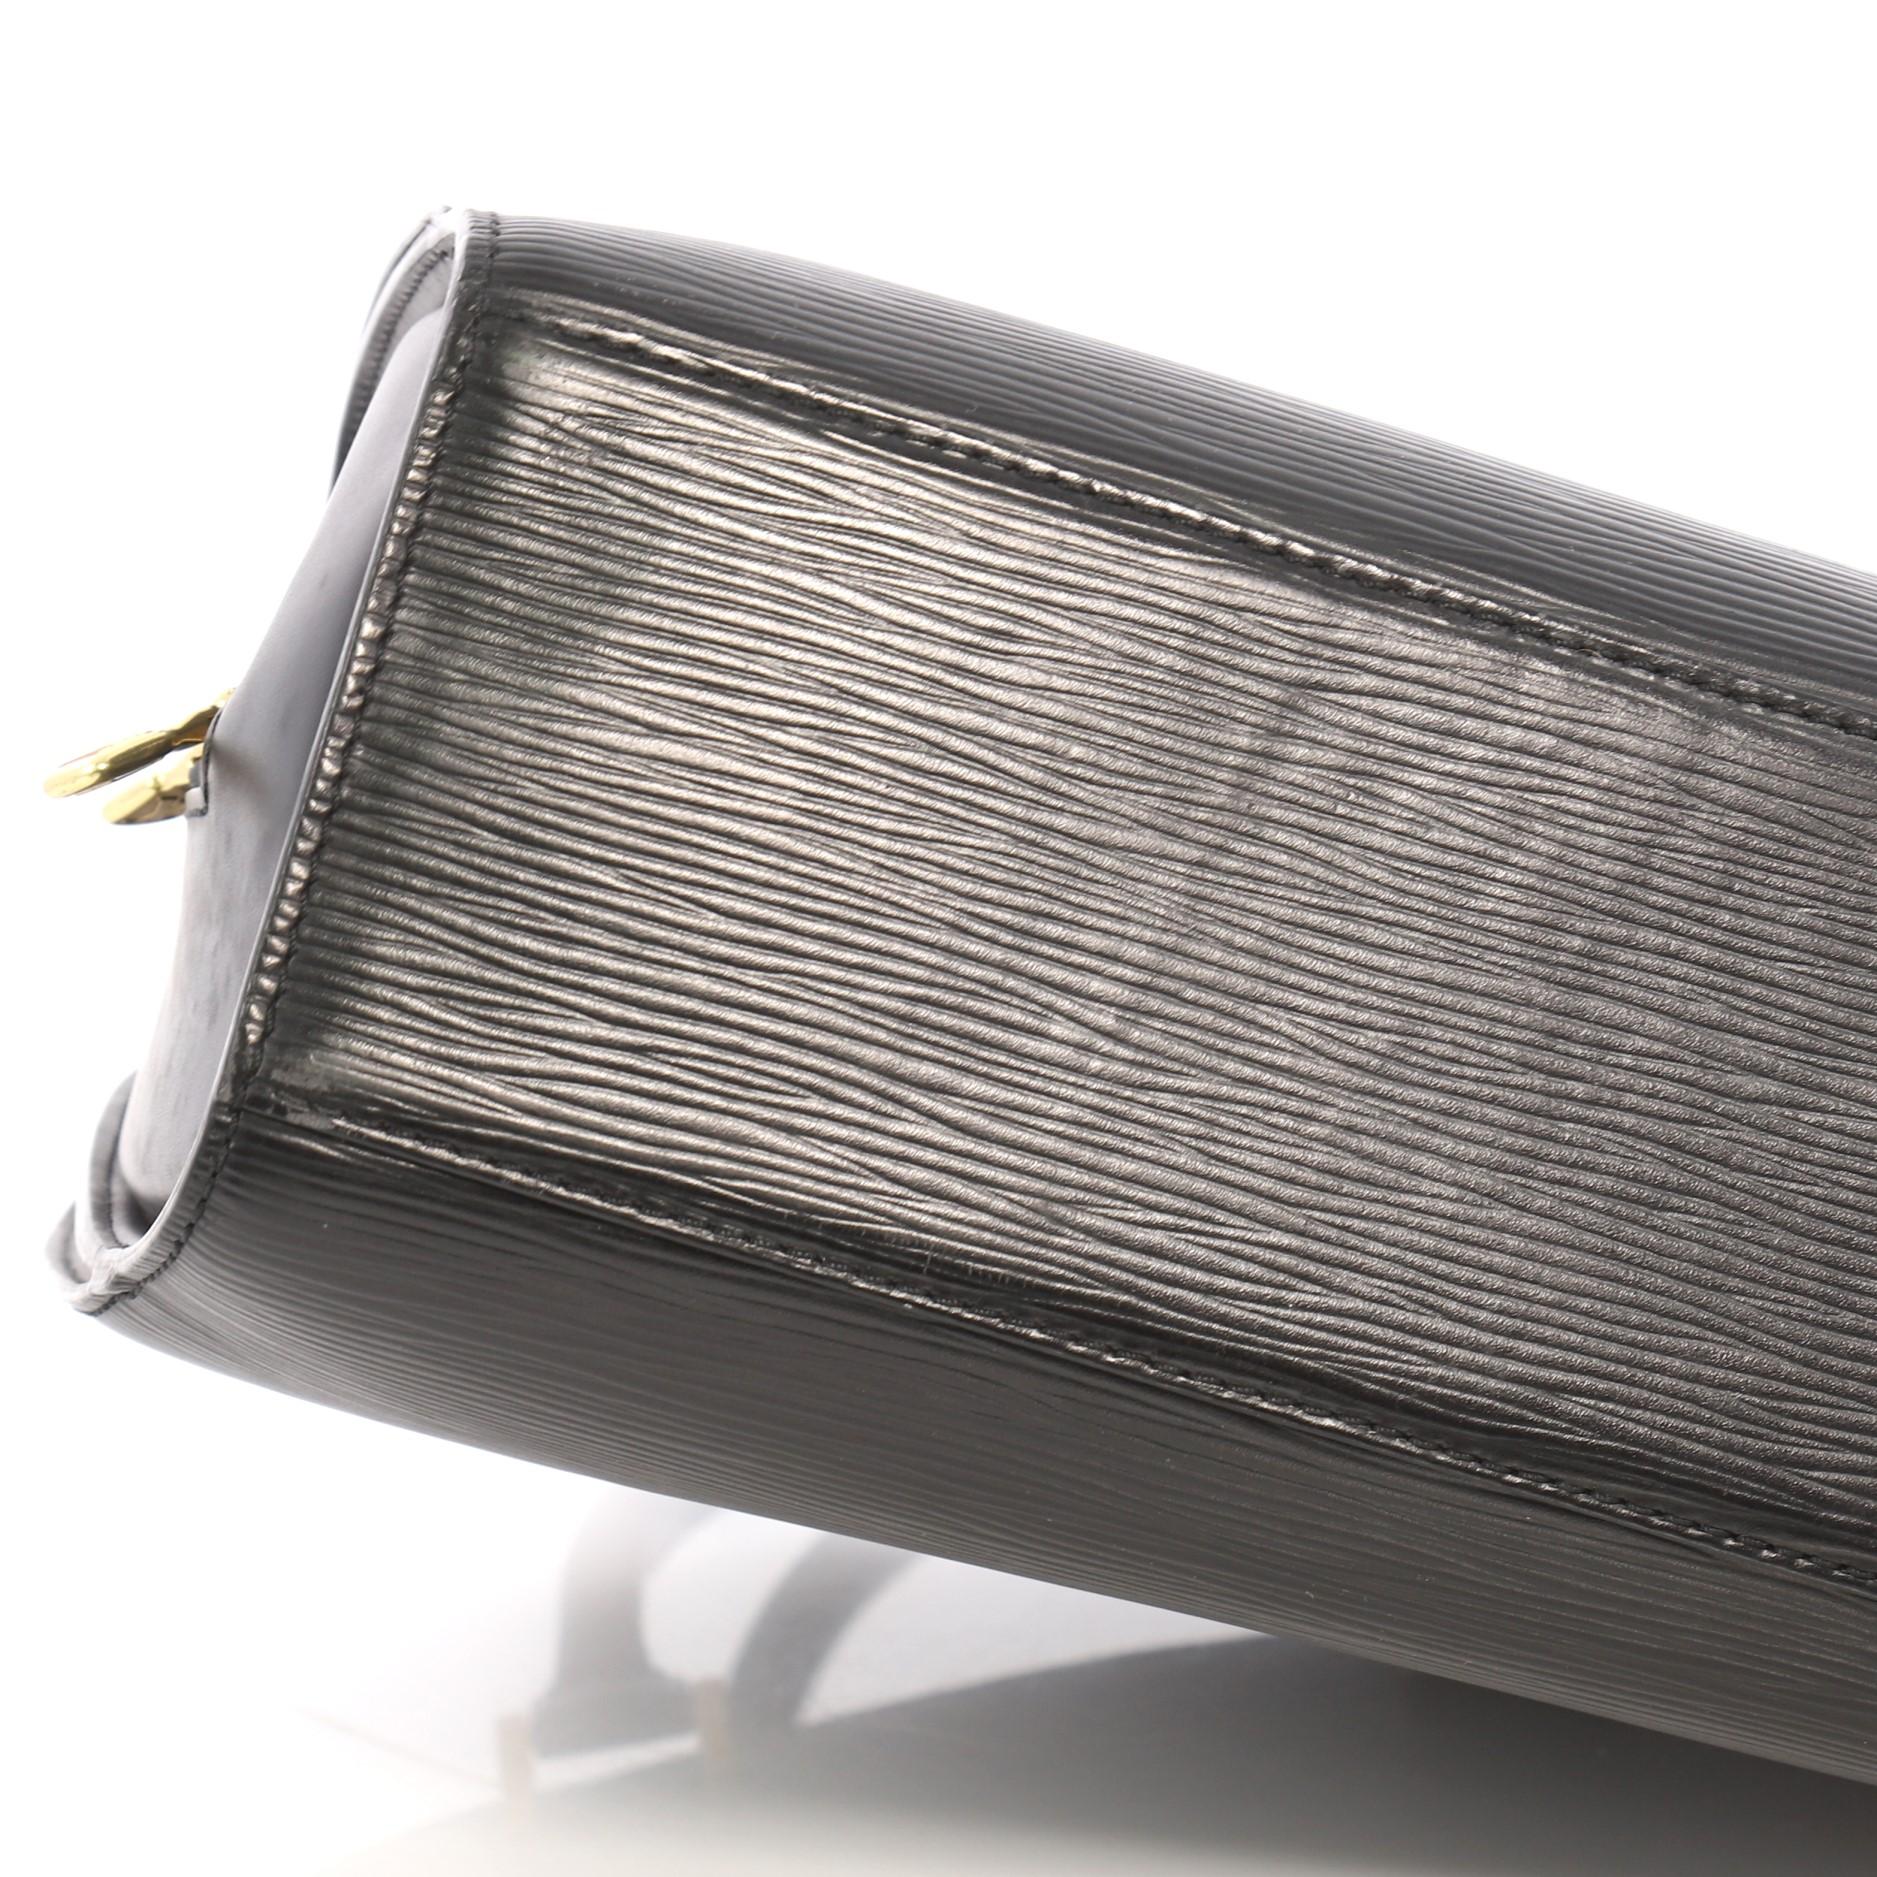 Louis Vuitton Pont Neuf Handbag Epi Leather PM 5